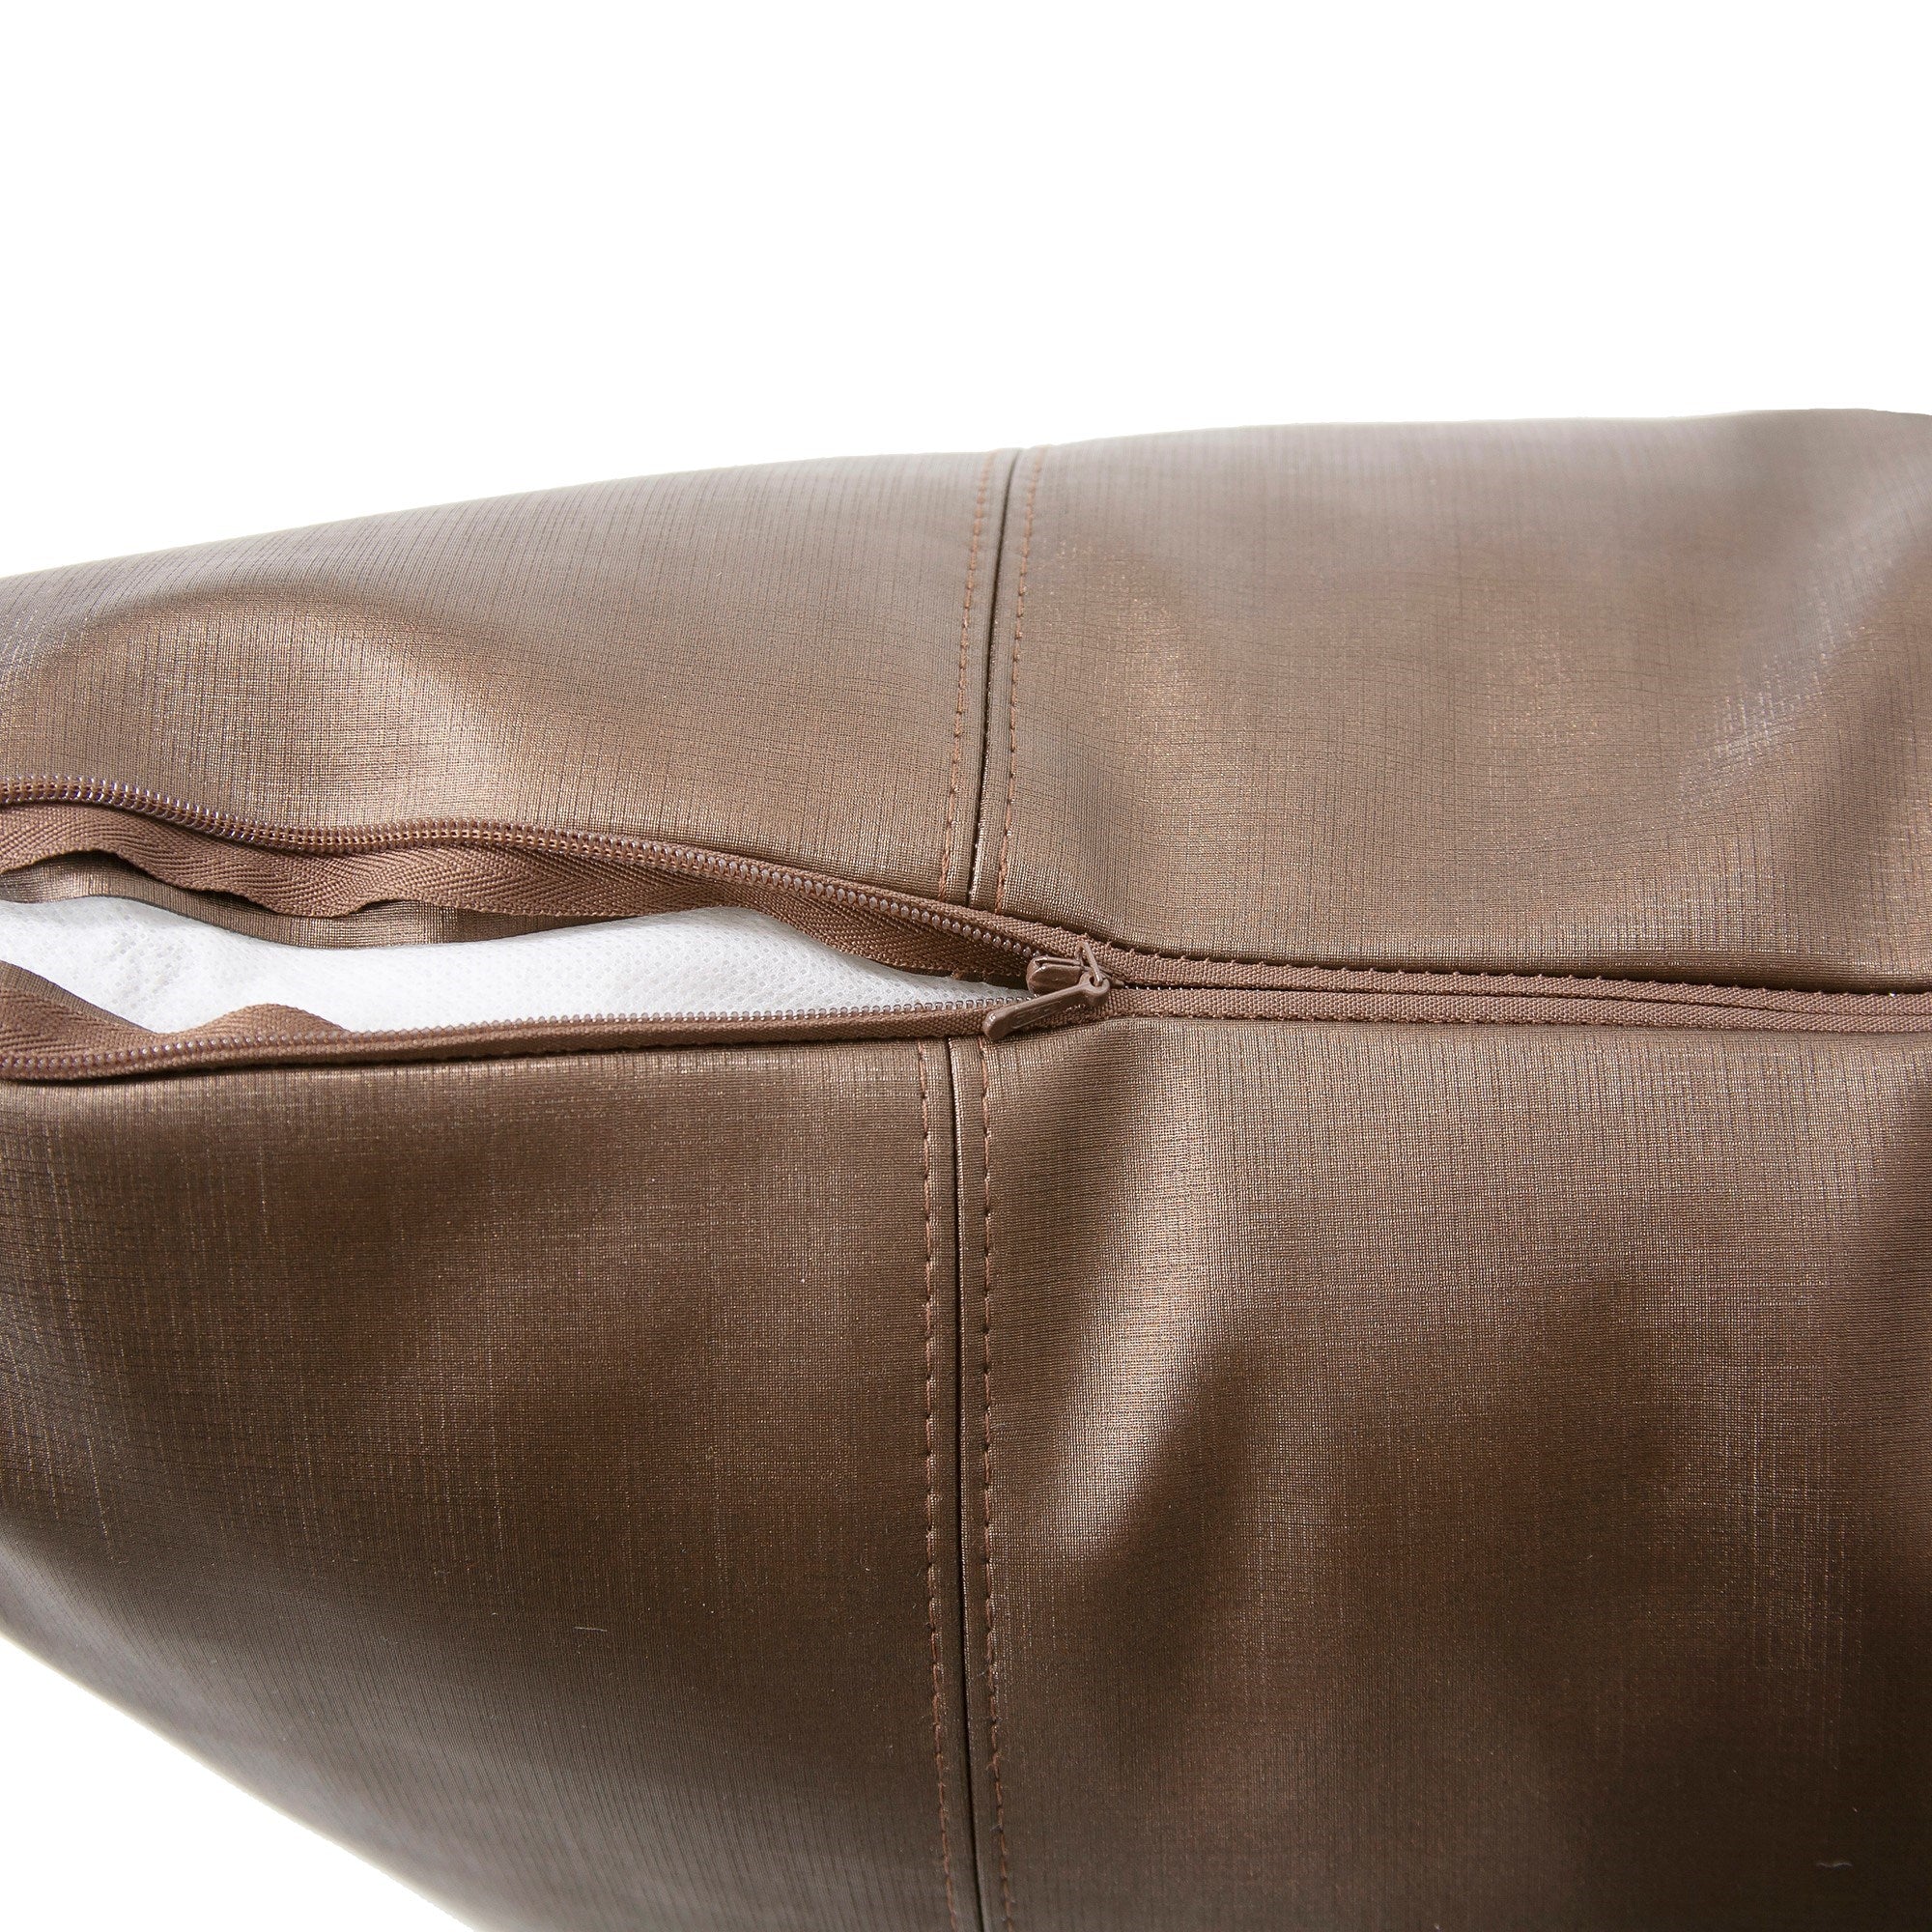 Luxe Bronze Kidney Pillow- 11" x 22"